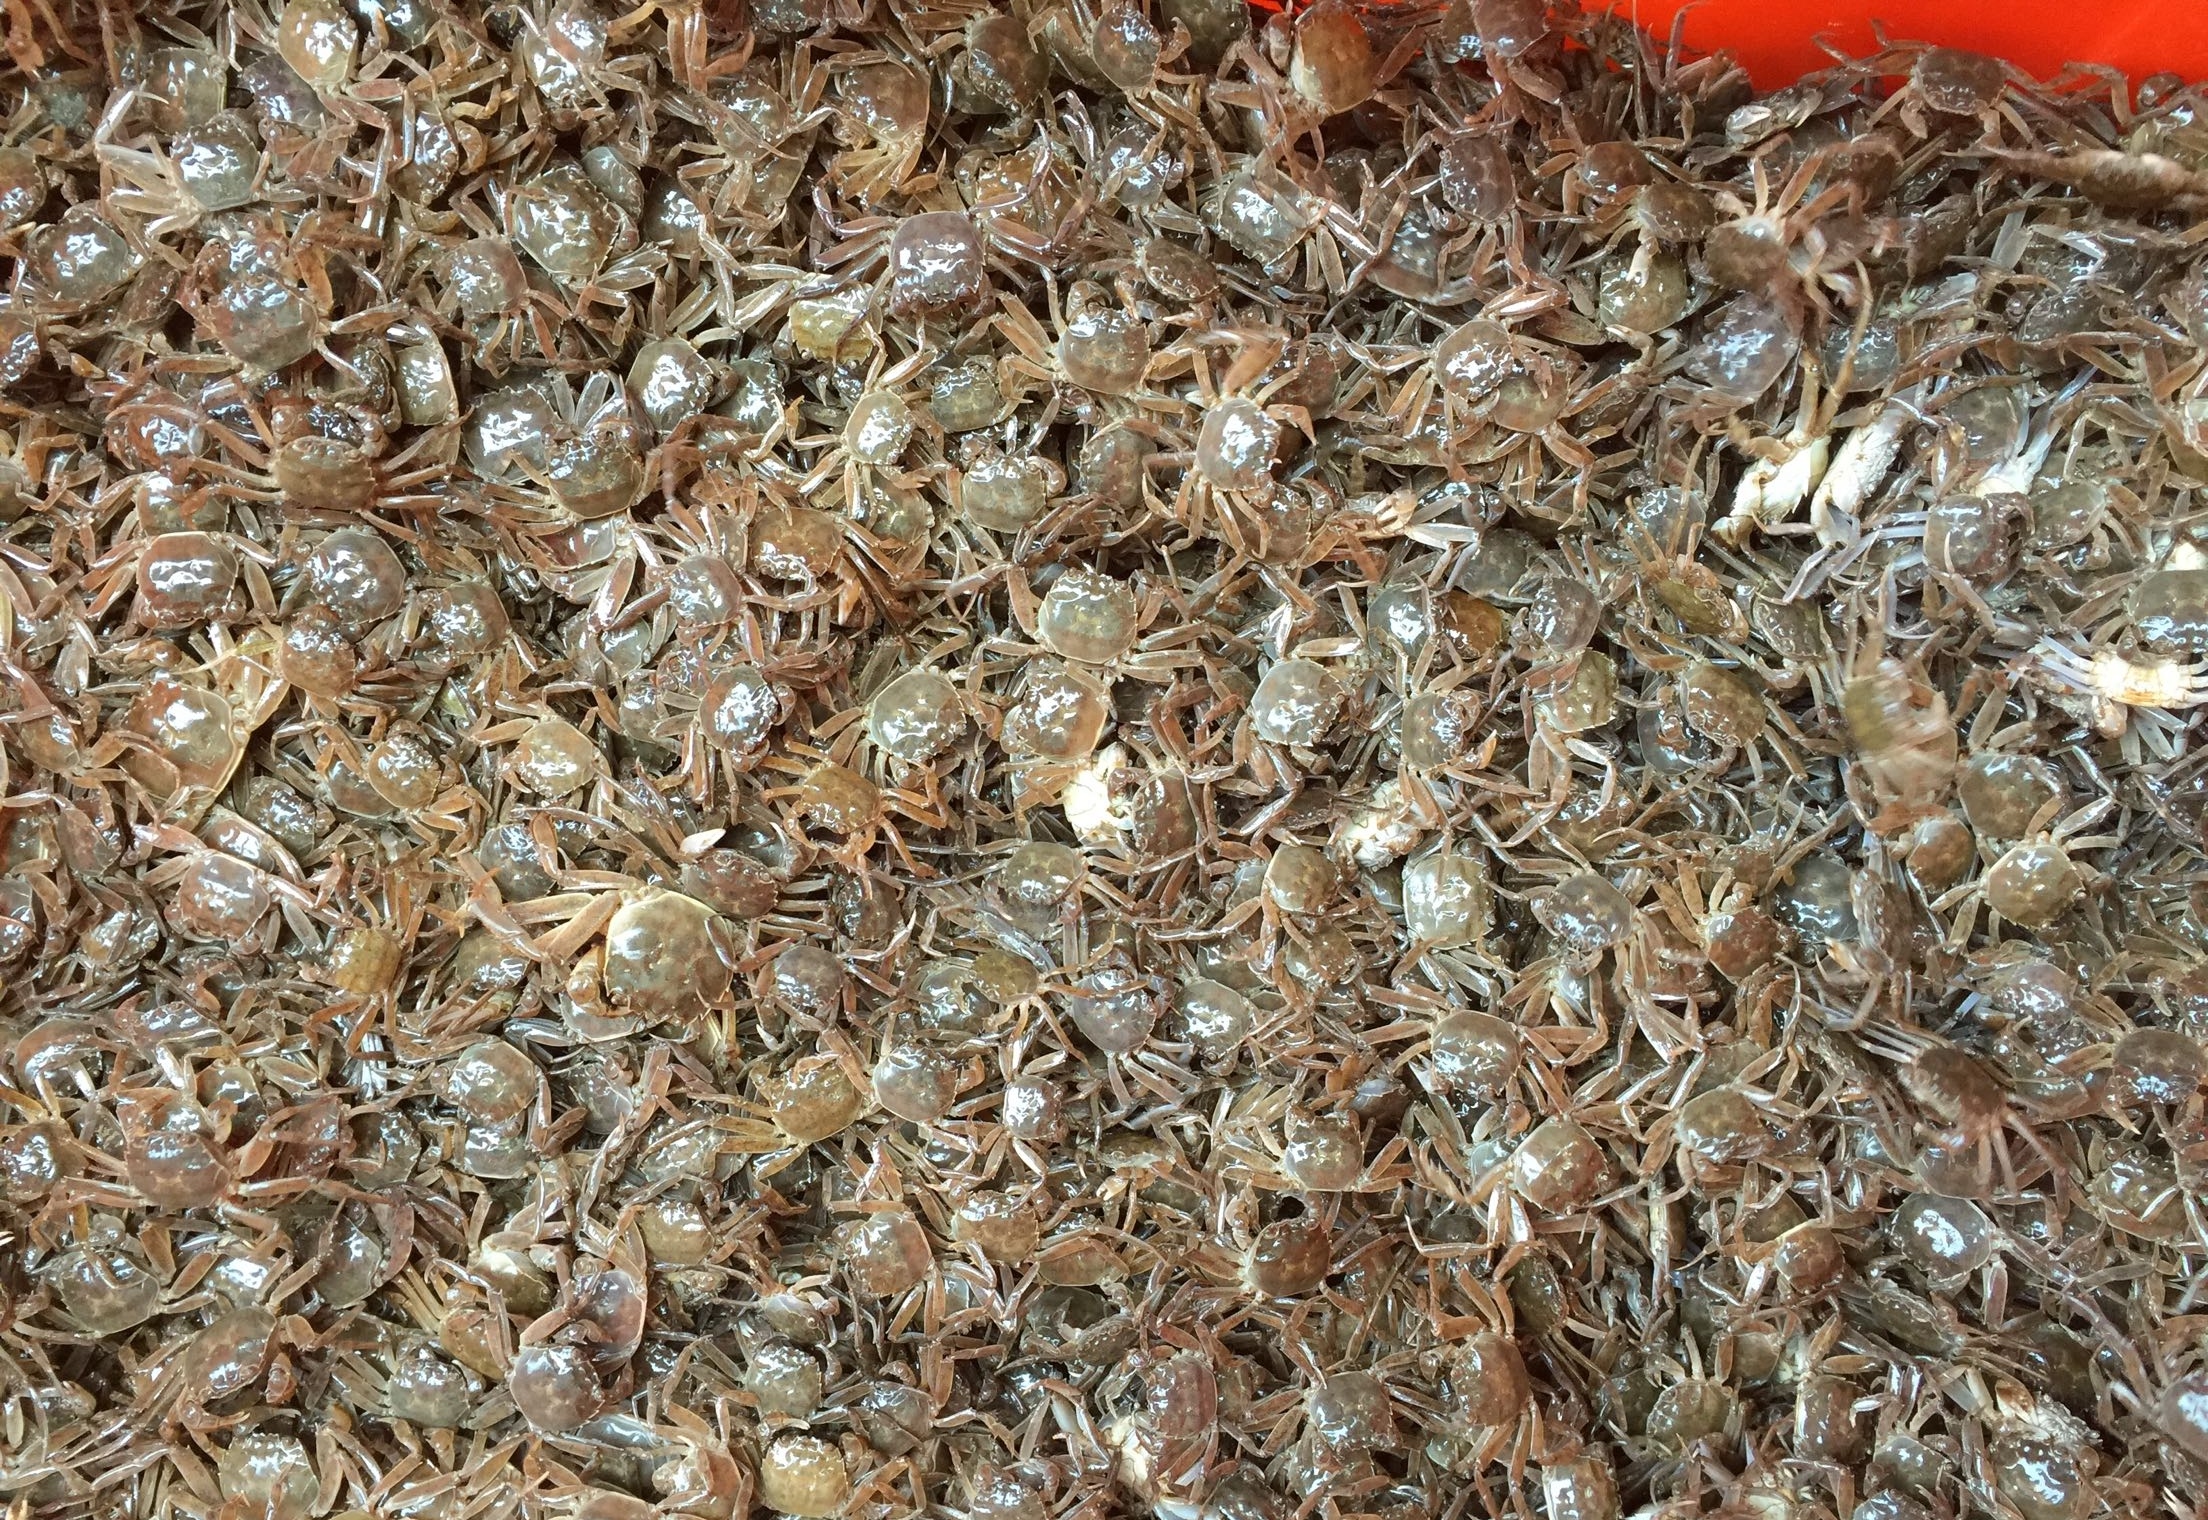 青背白肚、金爪黄毛，高品质河蟹是如何养殖的？一篇文章告诉你